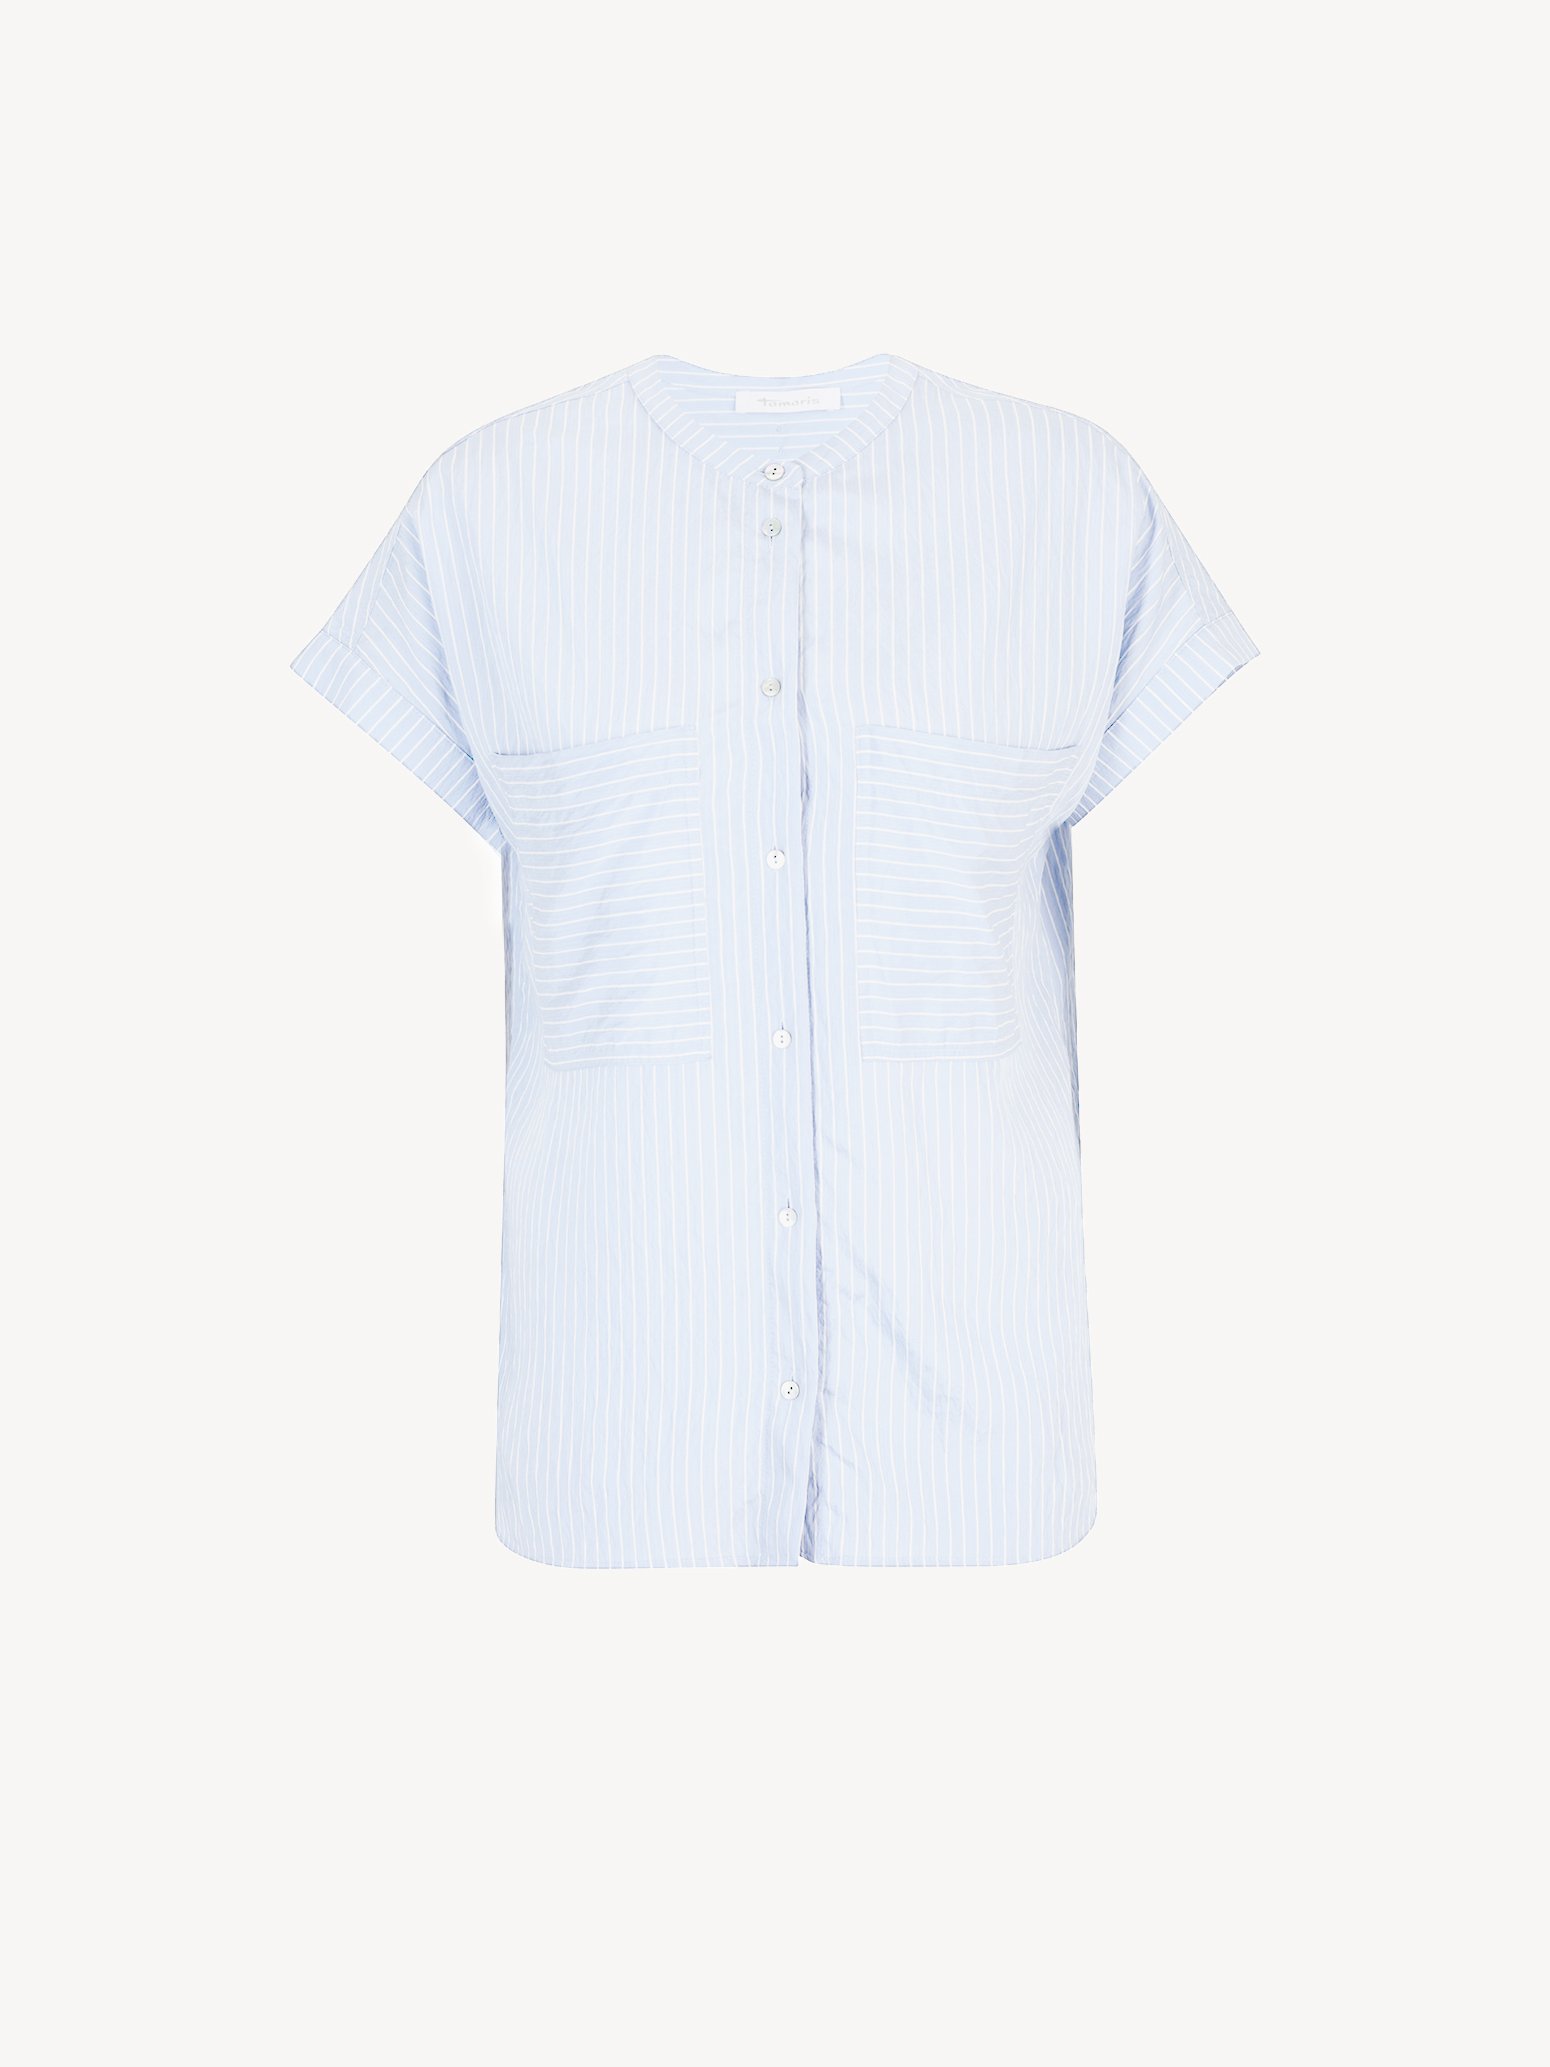 Bluse - blau TAW0103-53117: Tamaris Hemden & Blusen online kaufen!